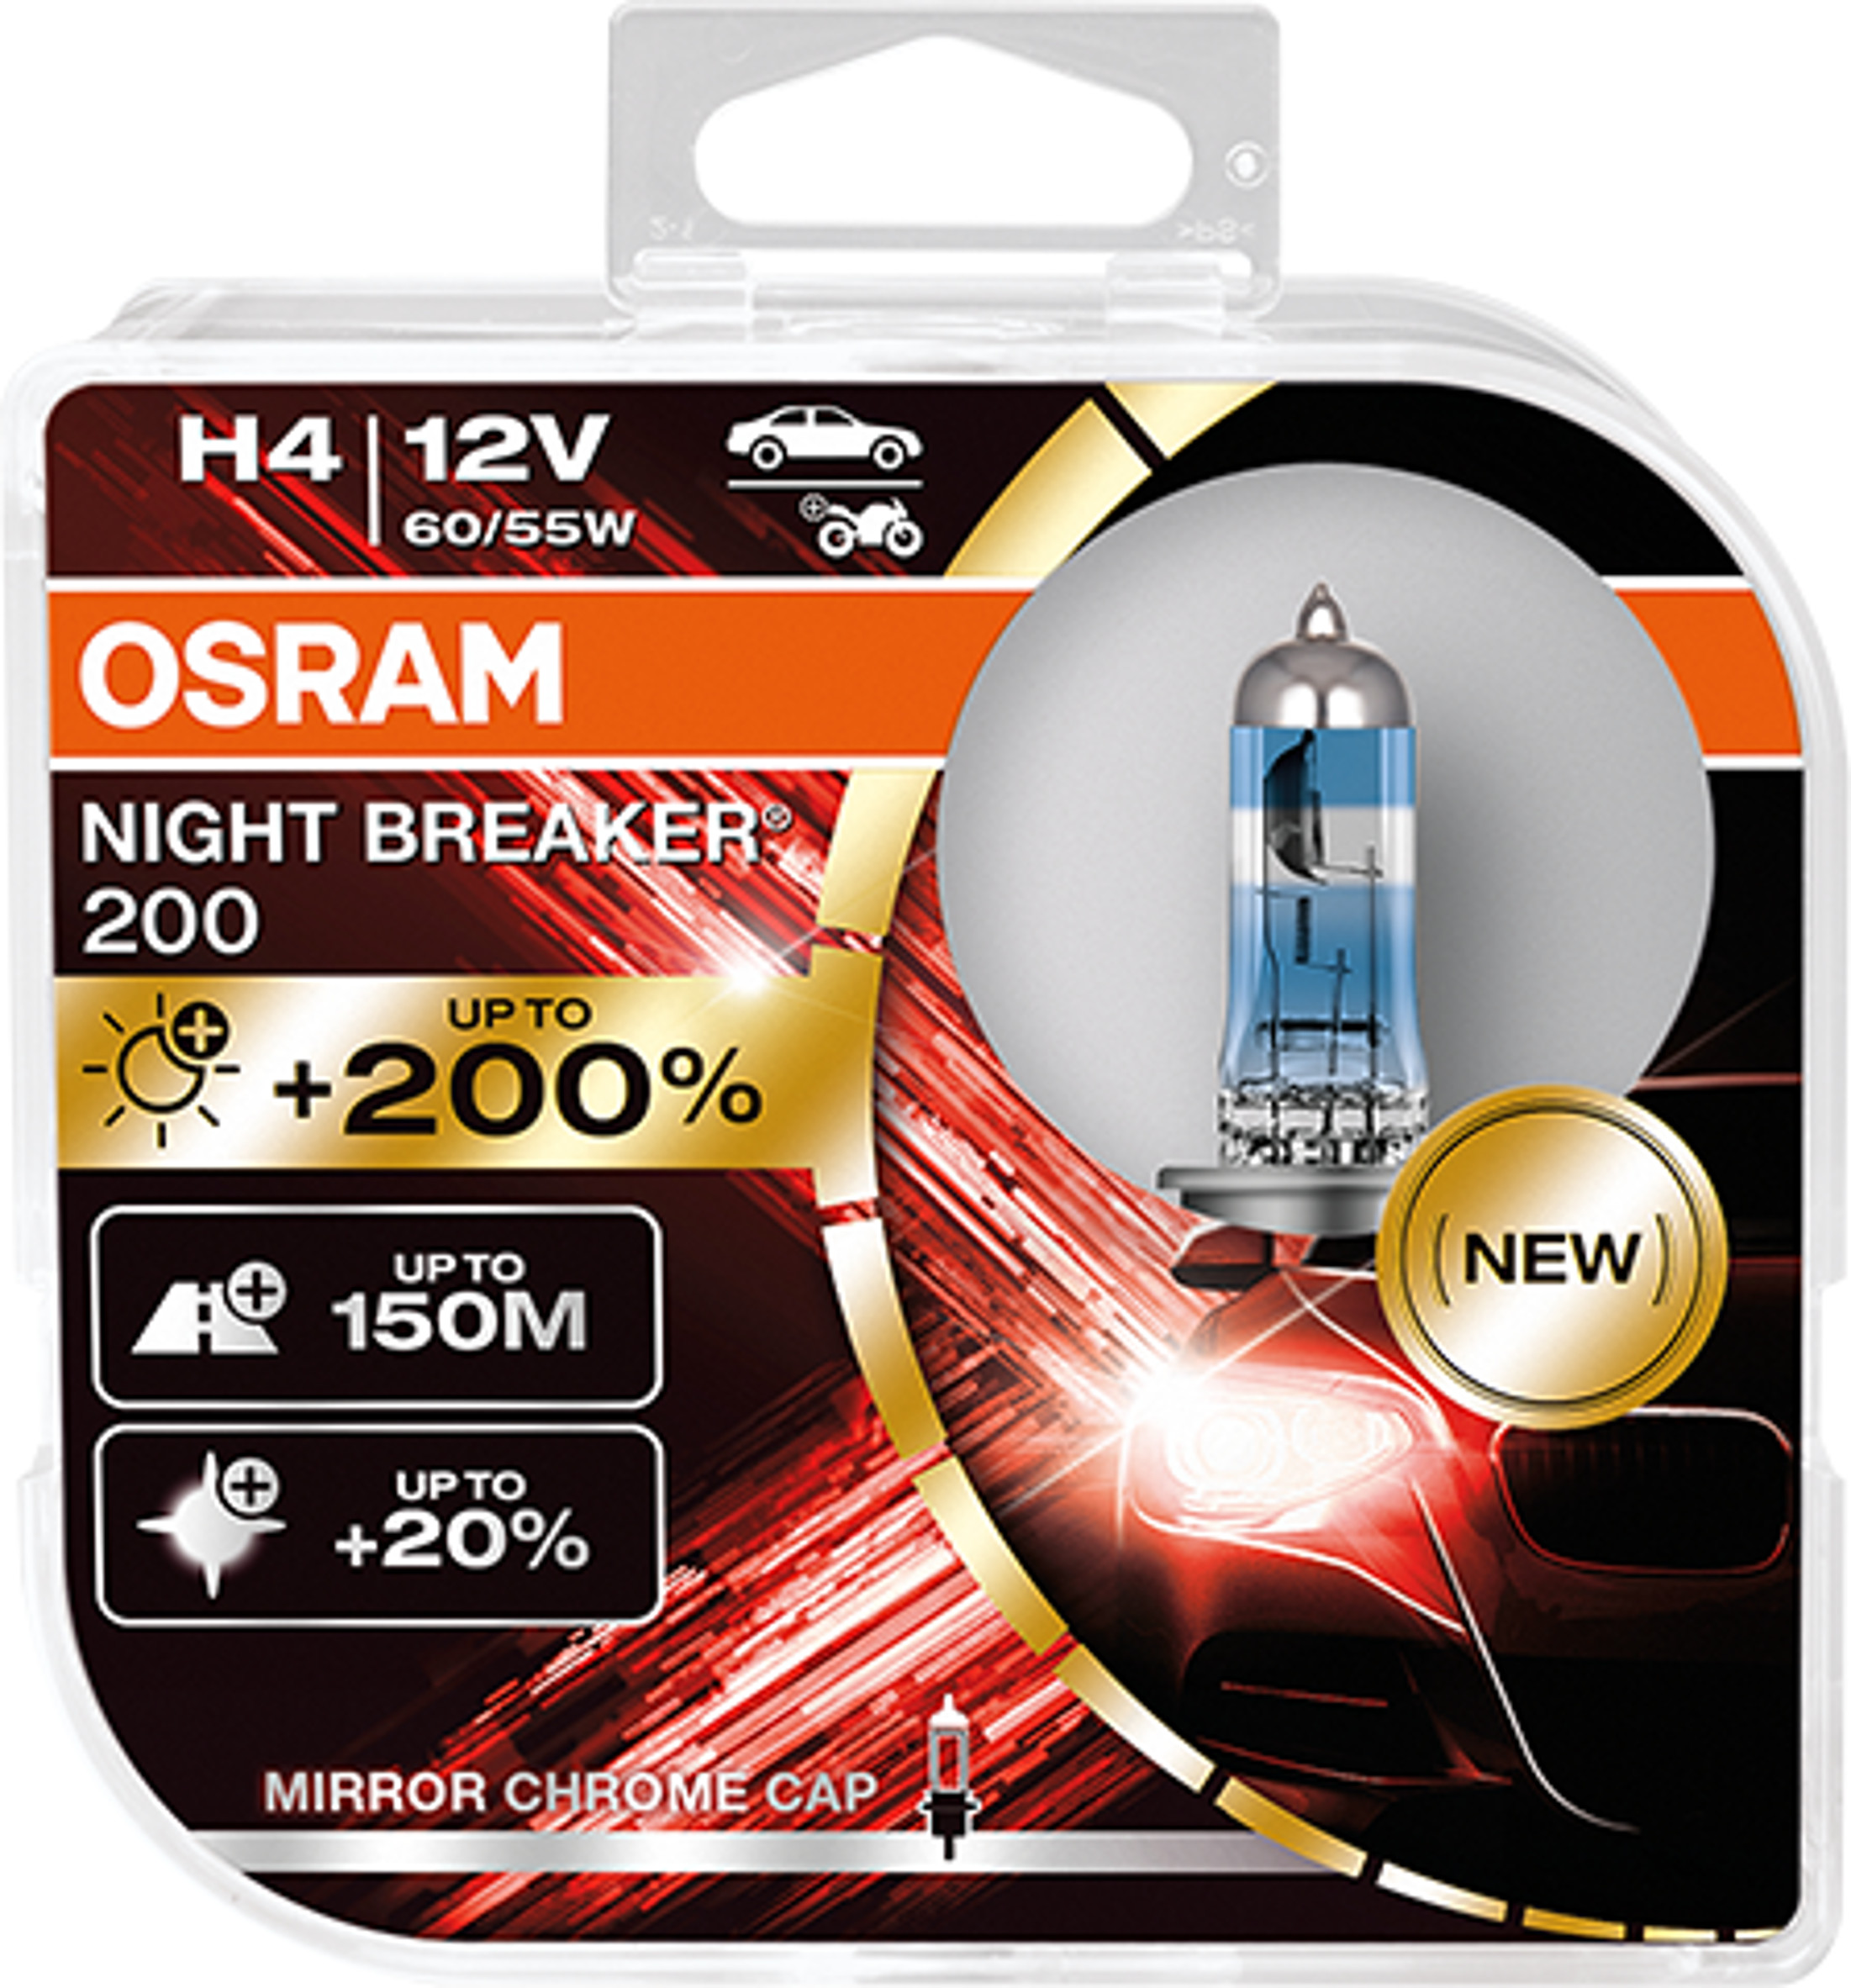 H4 12V NIGHT BREAKER 200 bis zu 200% mehr Licht 2St OSRAM